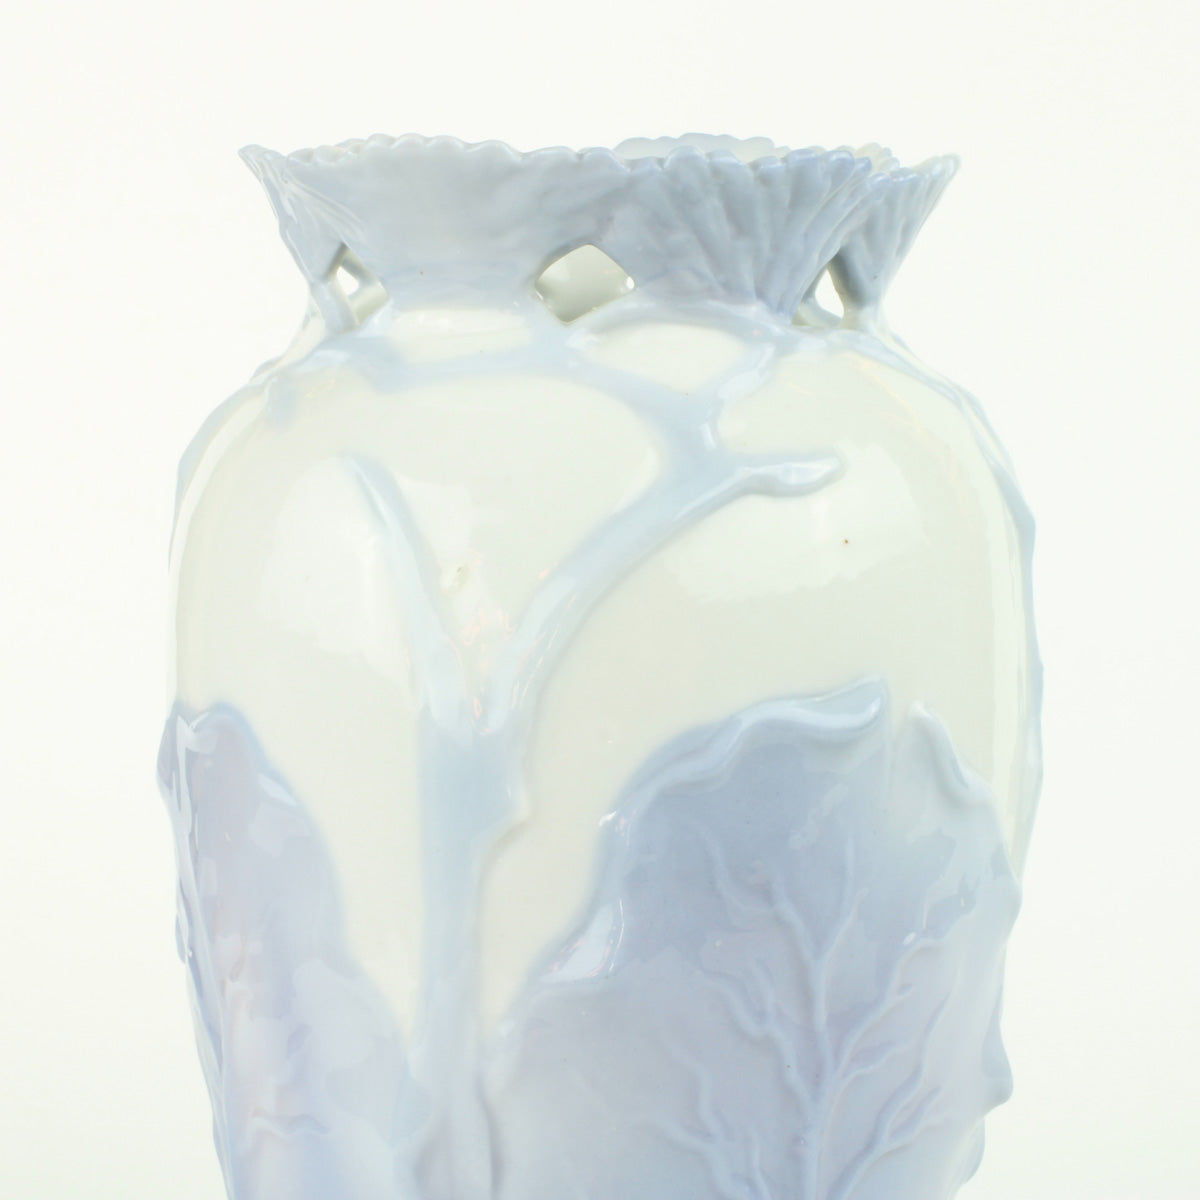 Vasen er af porcelæn med motiv af blade og stingler